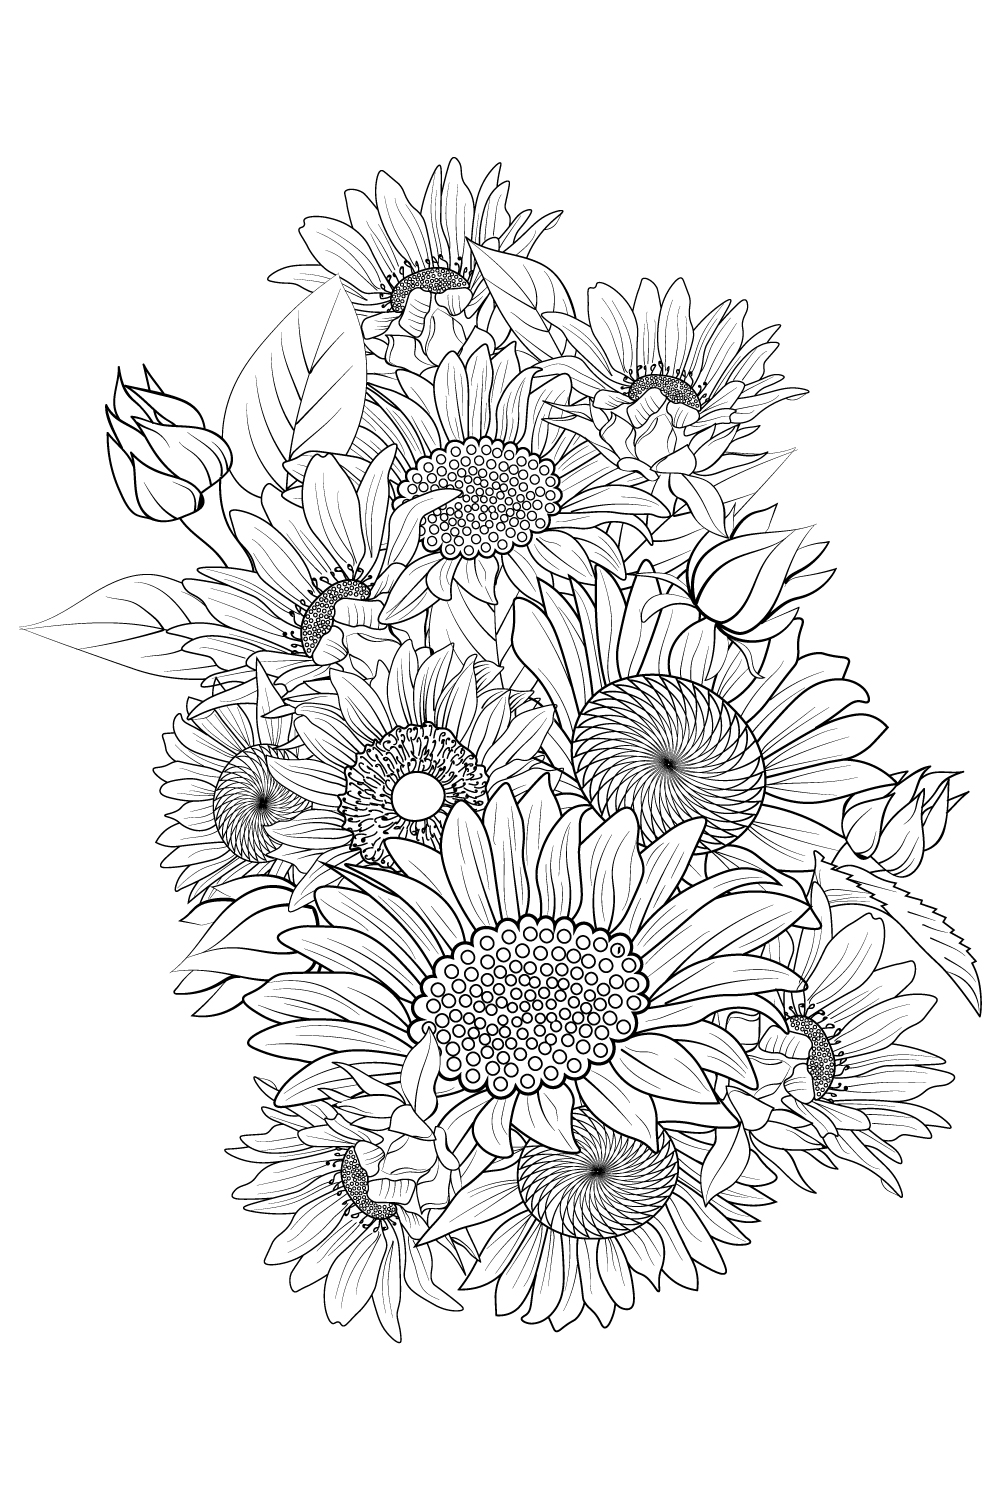 Tattoo uploaded by .Annalena.Wonderland. • FlowerPower. #flowerpower  #flowertattoo #flowers #flower #blossoms #blossomtattoo #naturetattoo  #garden #sunflower #sketchbook #sunflowertattoo #cherryblossomtattoo #rose  #rosetattoo #eternalink #sketch ...